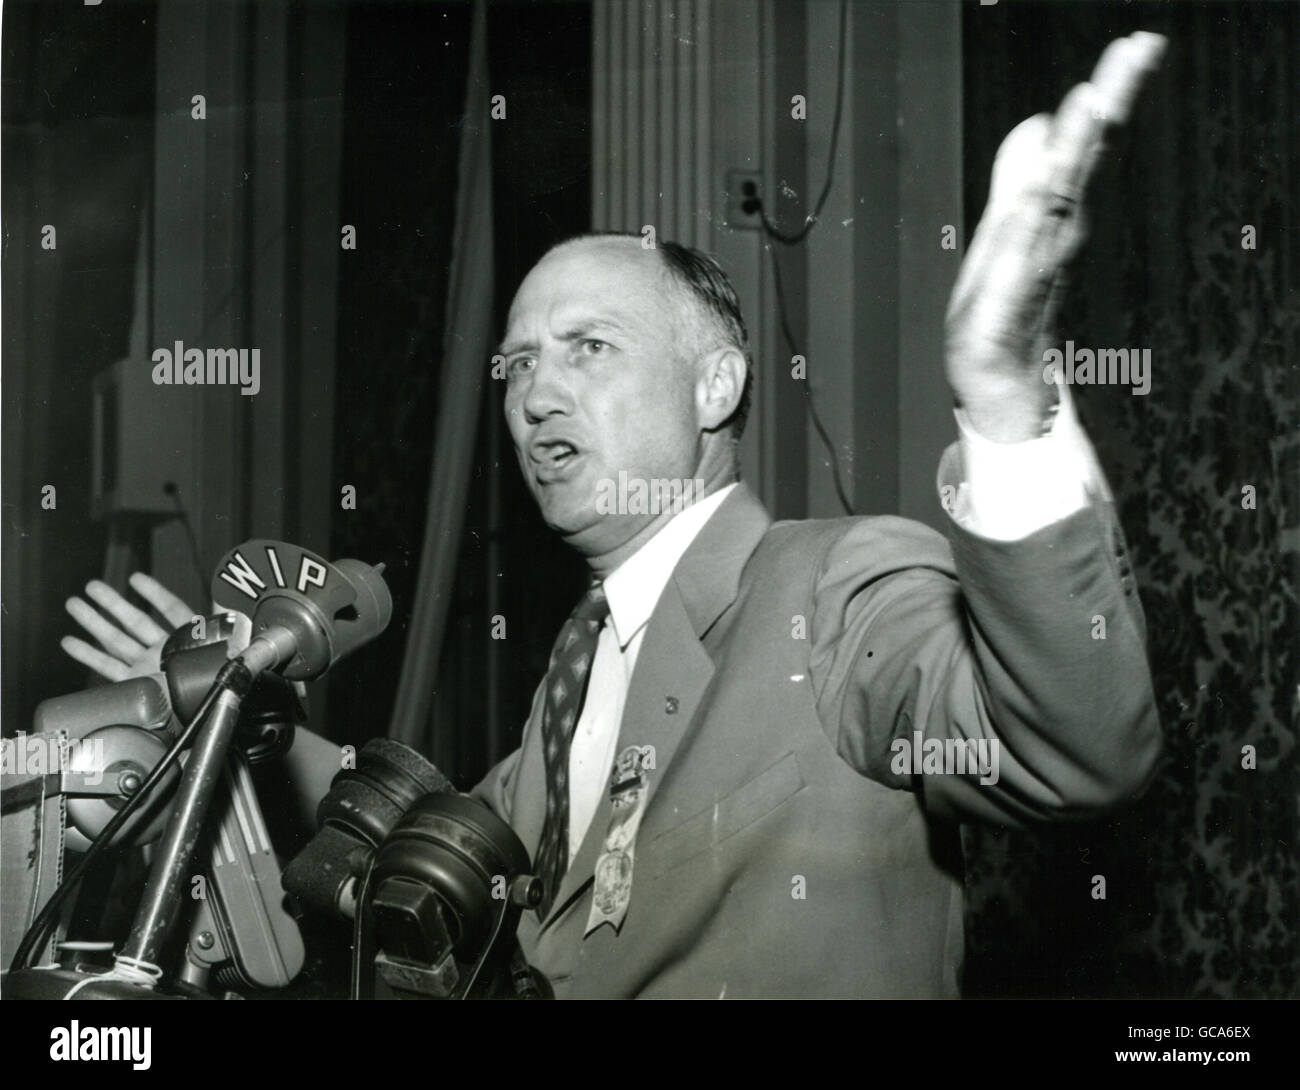 Gouverneur Strom Thurmond, fiery chef de Démocrates du Sud qui sont Gunning pour le Président Truman sur la question des droits civils, est montré comme il a exigé cet après-midi au caucus de Dixie délégués qu'ils votent pour un sudiste pour le président. Banque D'Images